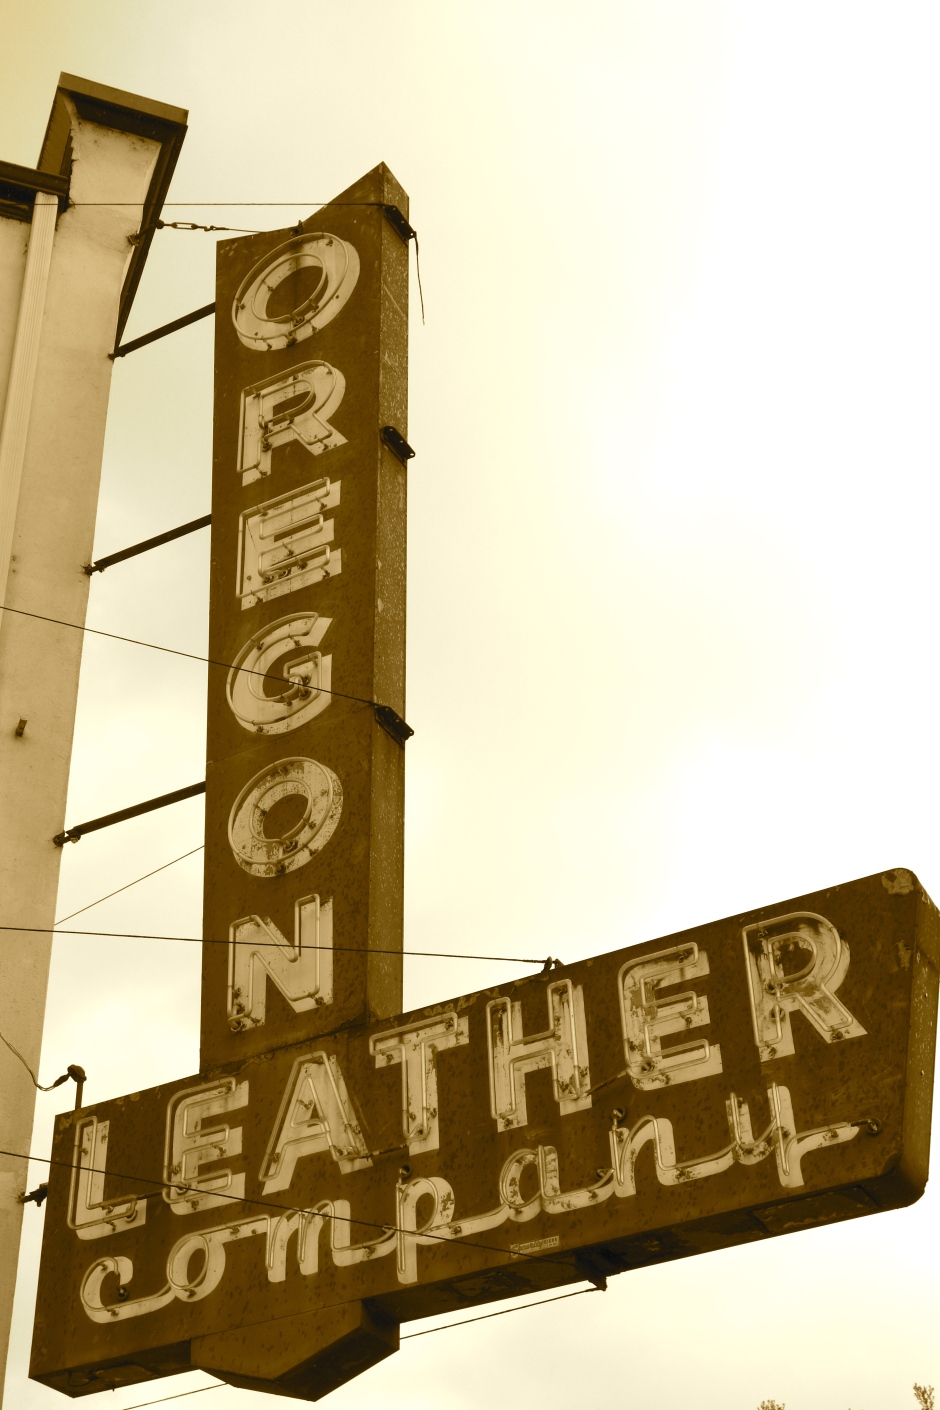 Oregon leather company